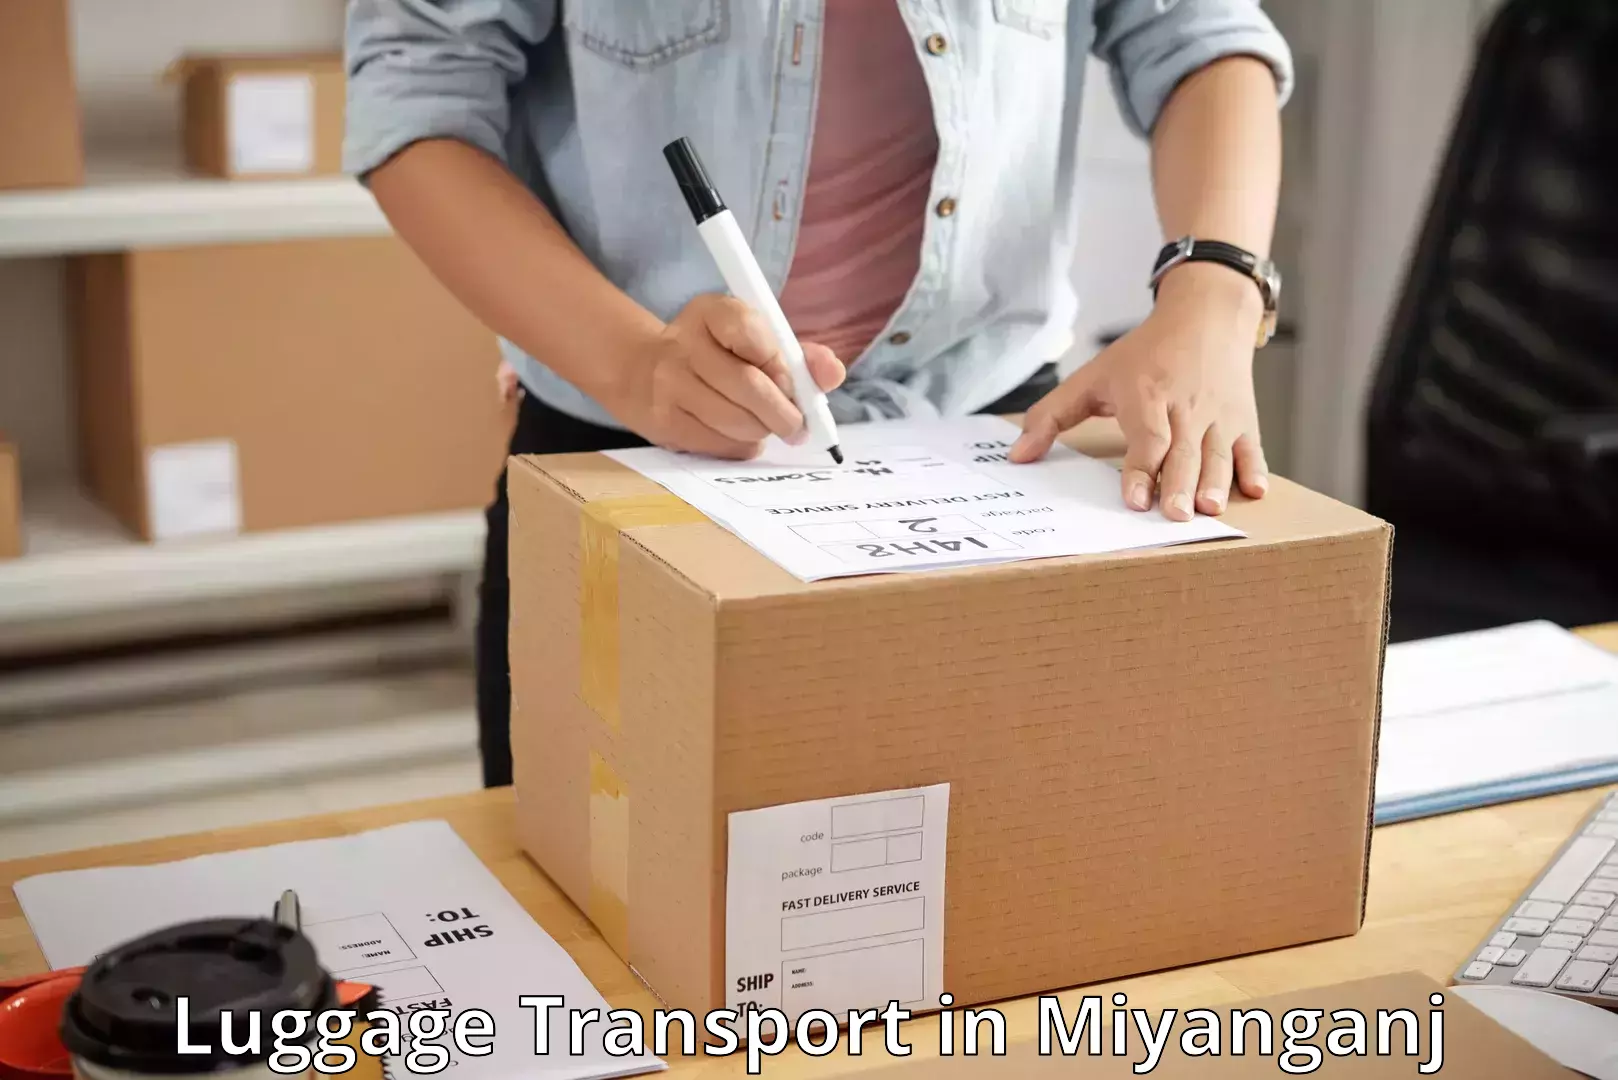 Luggage shipping estimate in Miyanganj